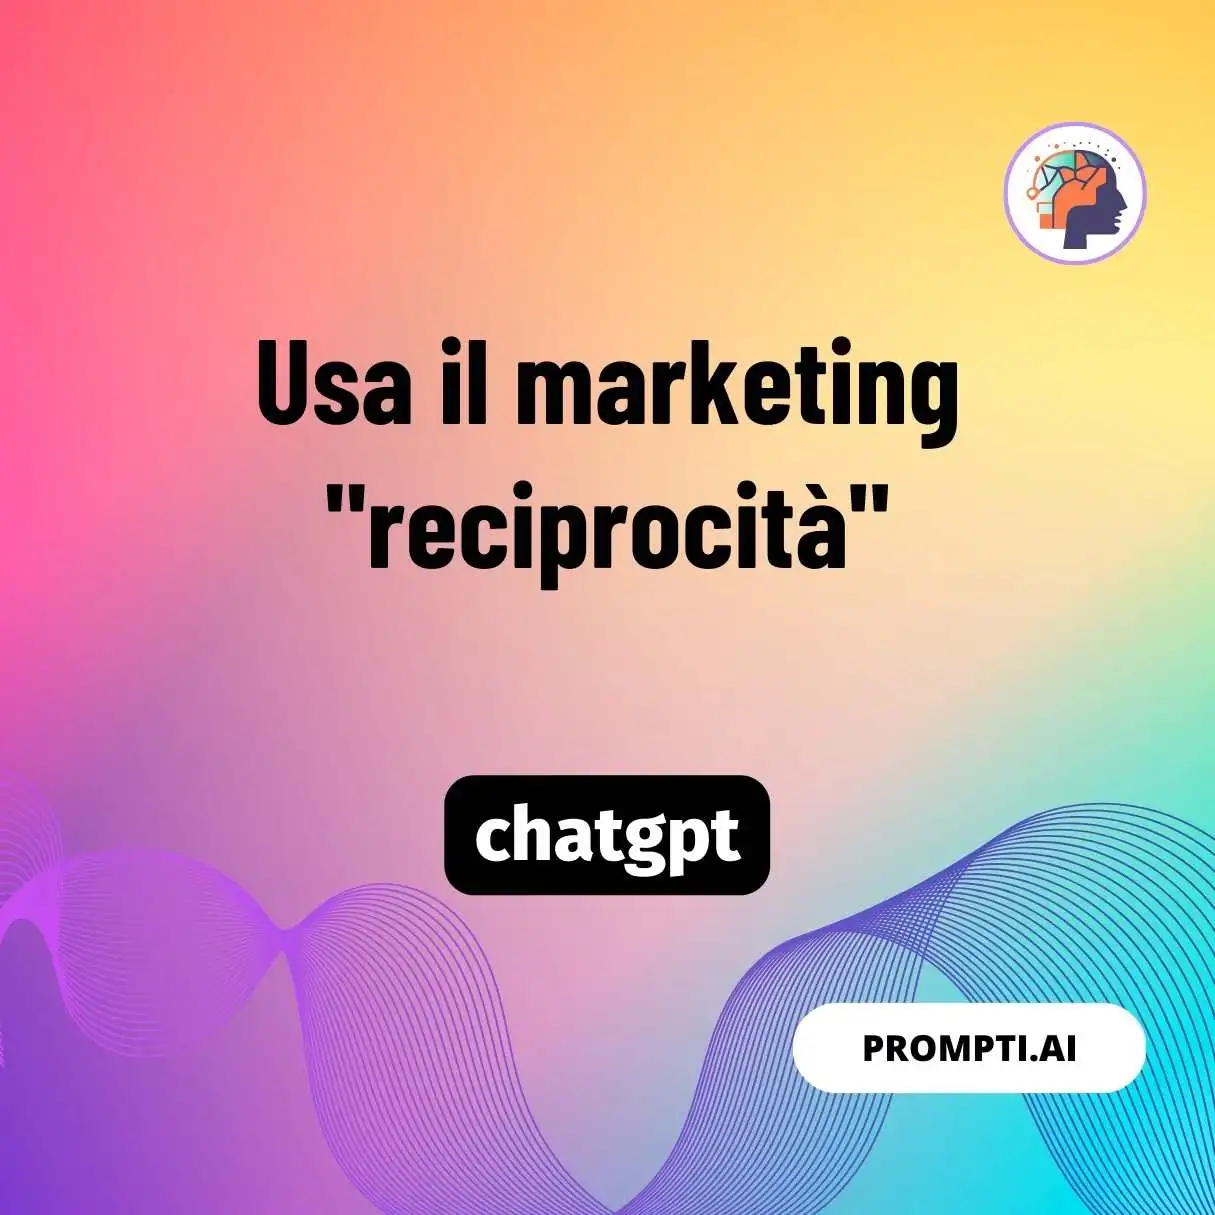 Usa il marketing “reciprocità”